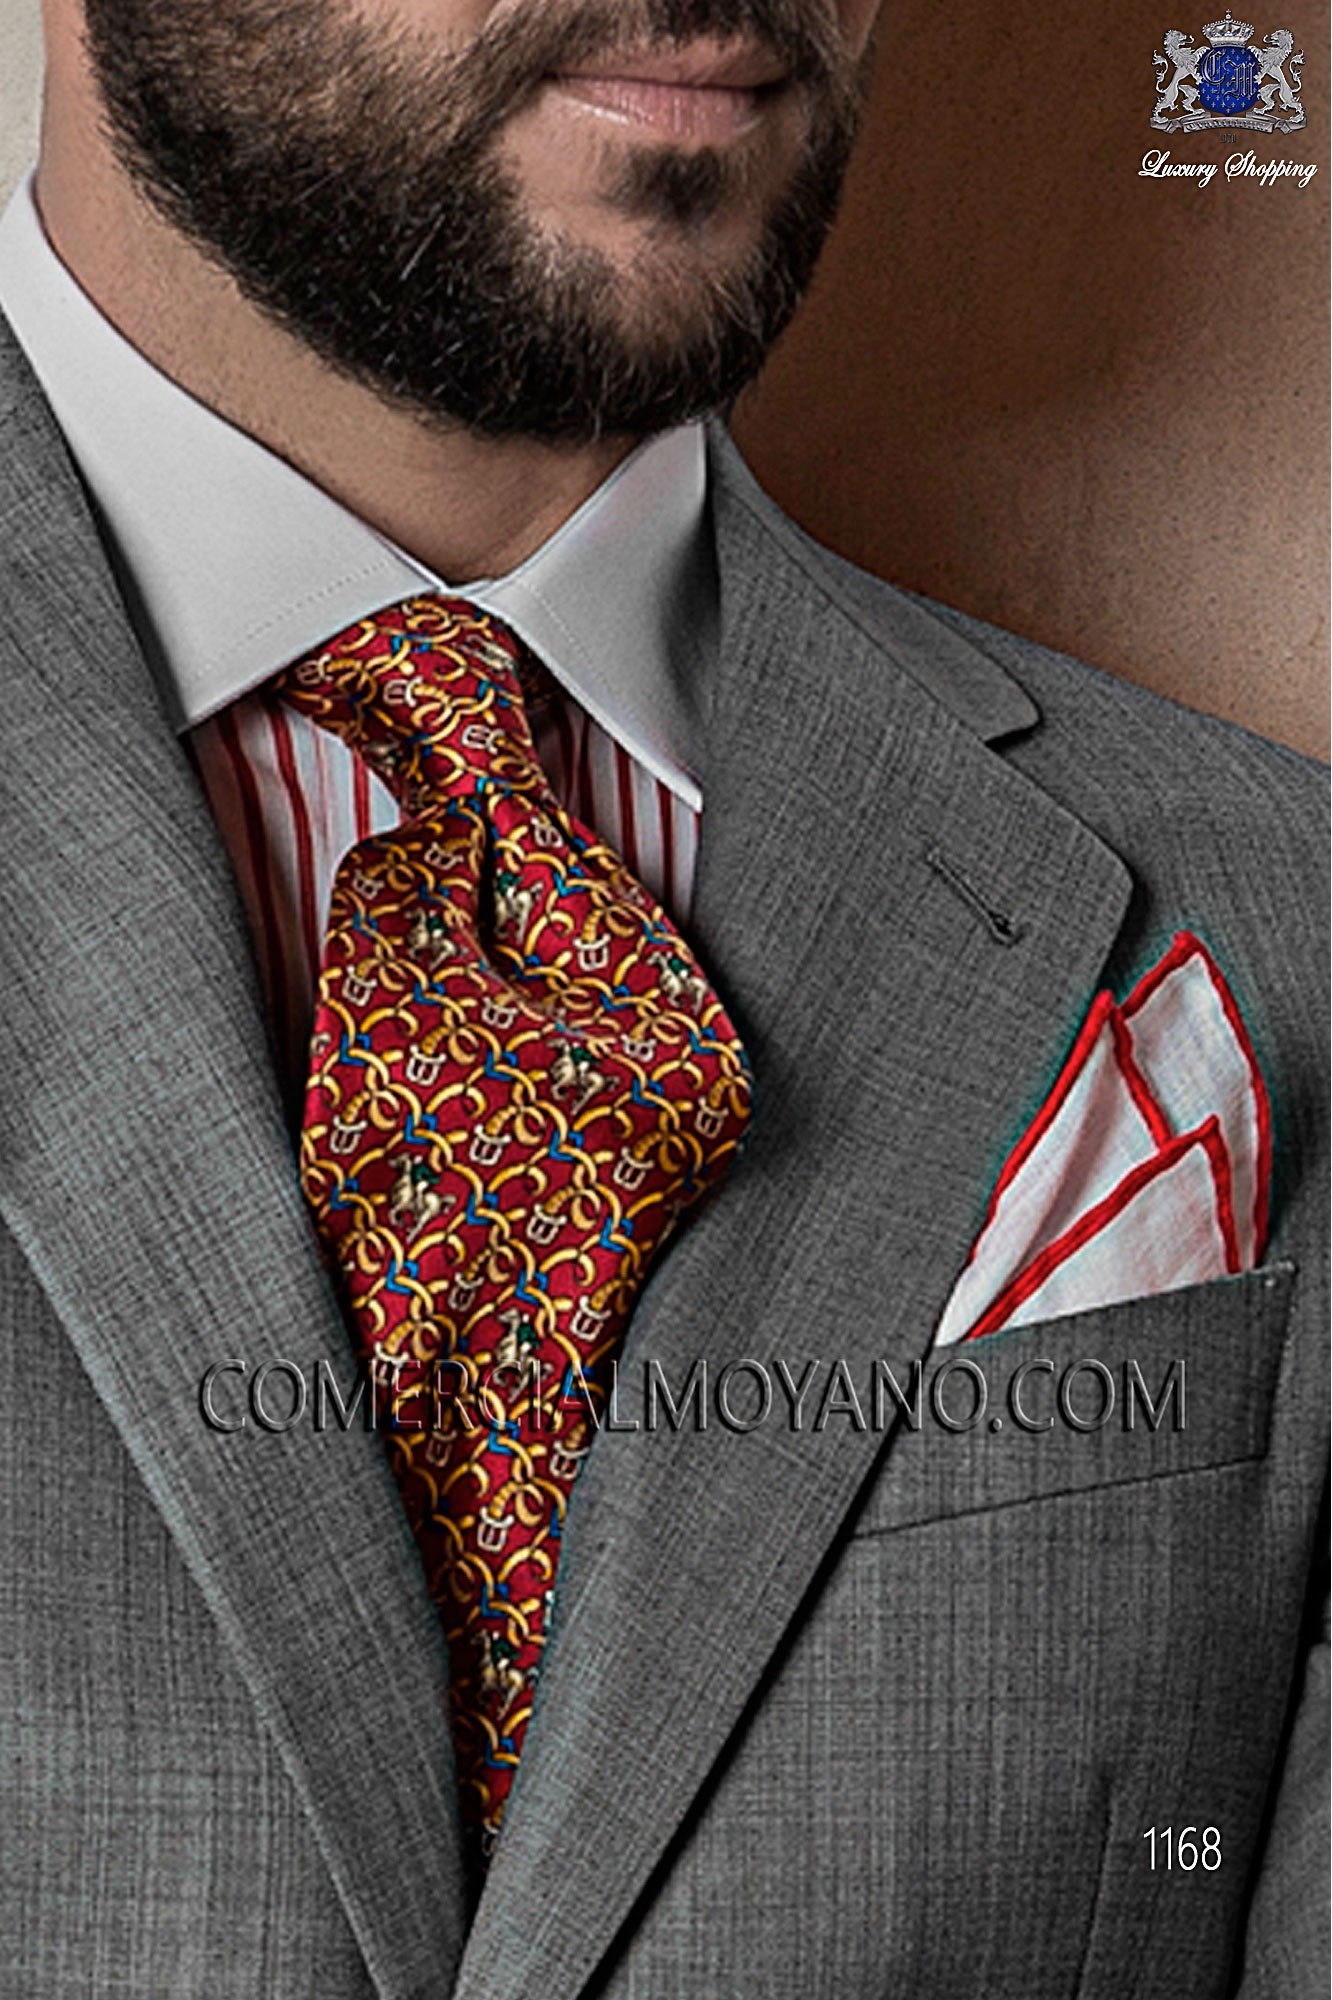 Italian gentleman gray men wedding suit, model: 1168 Mario Moyano Gentleman Collection